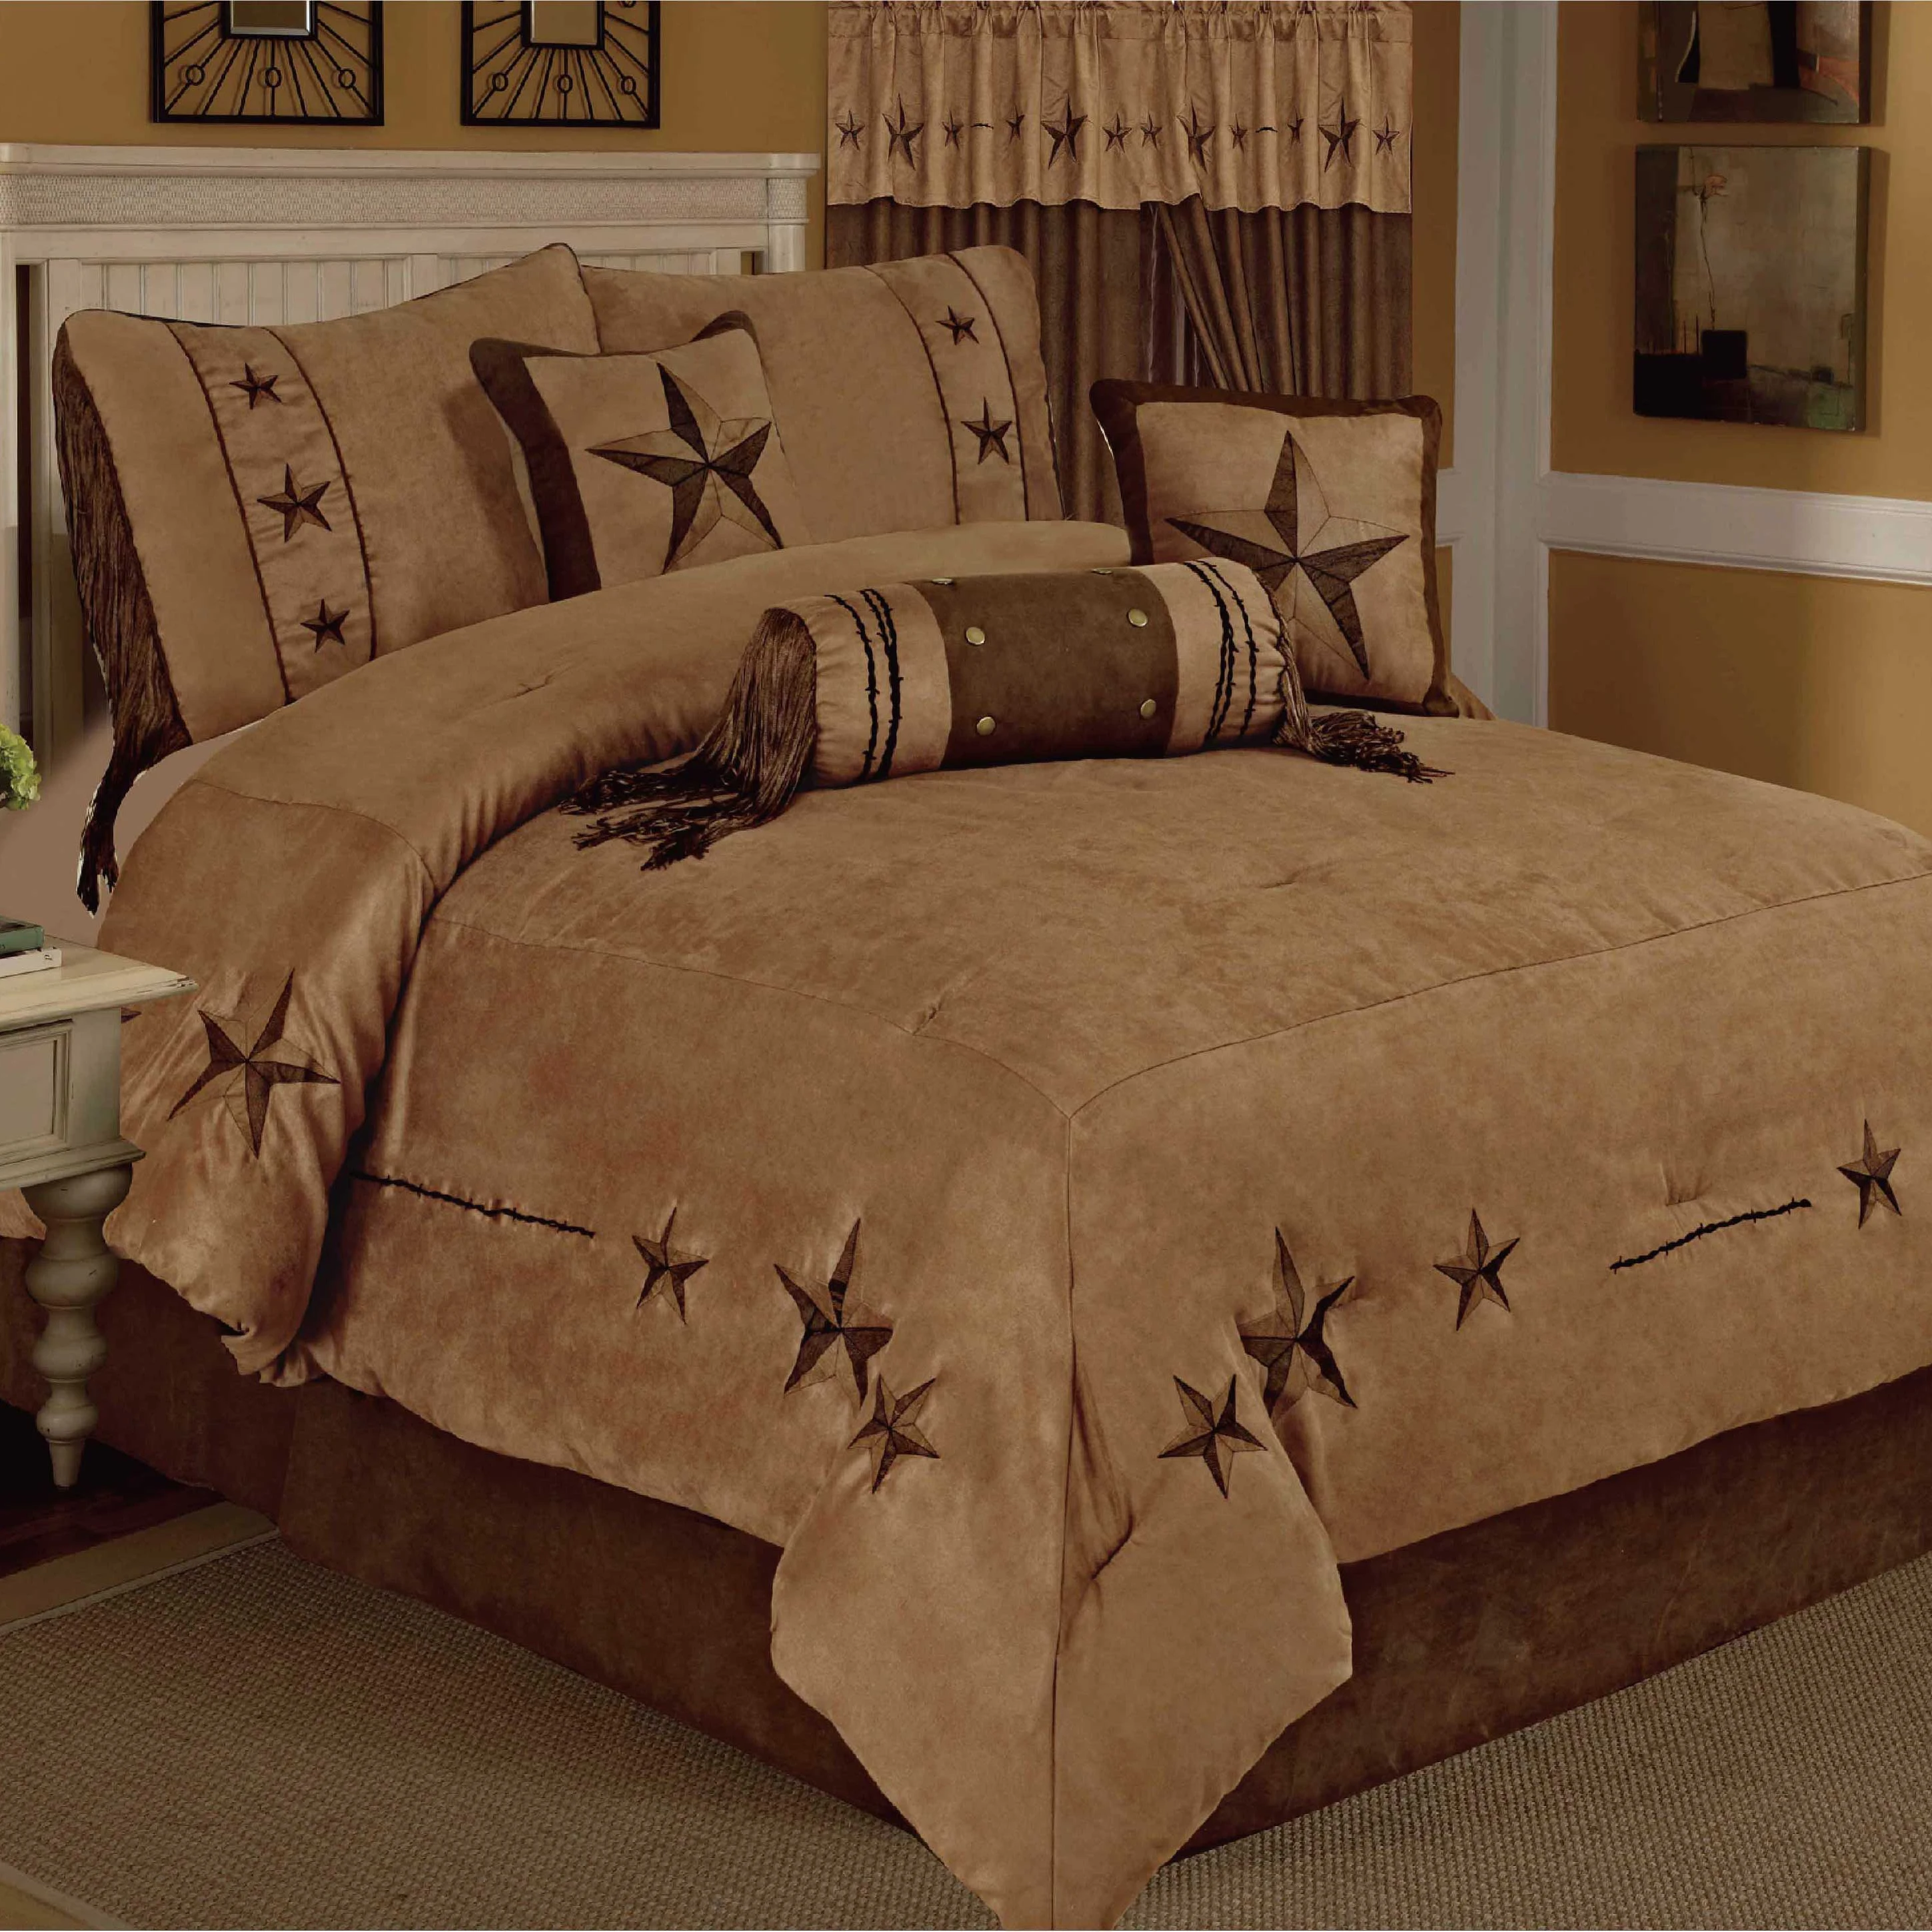 Новый Дизайн Роскошный со звездами в западном стиле из искусственной замши 7 шт. для кровати King/постельных принадлежностей двухспального размера набор стеганых одеял